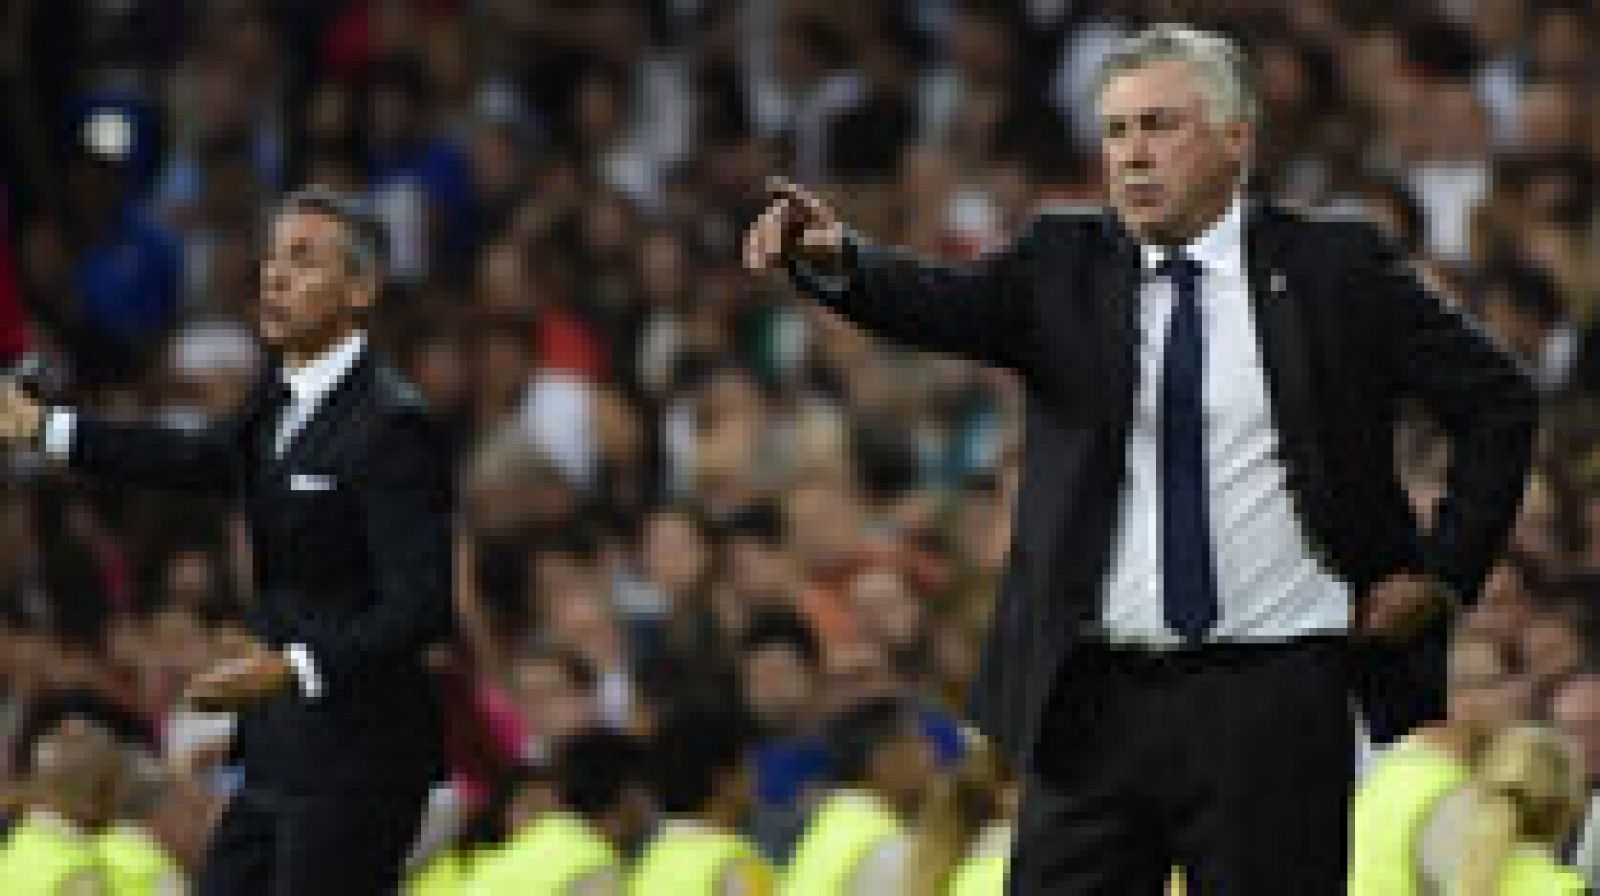 Carlo Ancelotti, técnico del Real Madrid, aseguró por segundo partido consecutivo que no escucha los silbidos de la afición del Santiago Bernabéu, y pidió ser "positivos" afirmando que sí le llegan los cánticos de "como no te voy a querer".